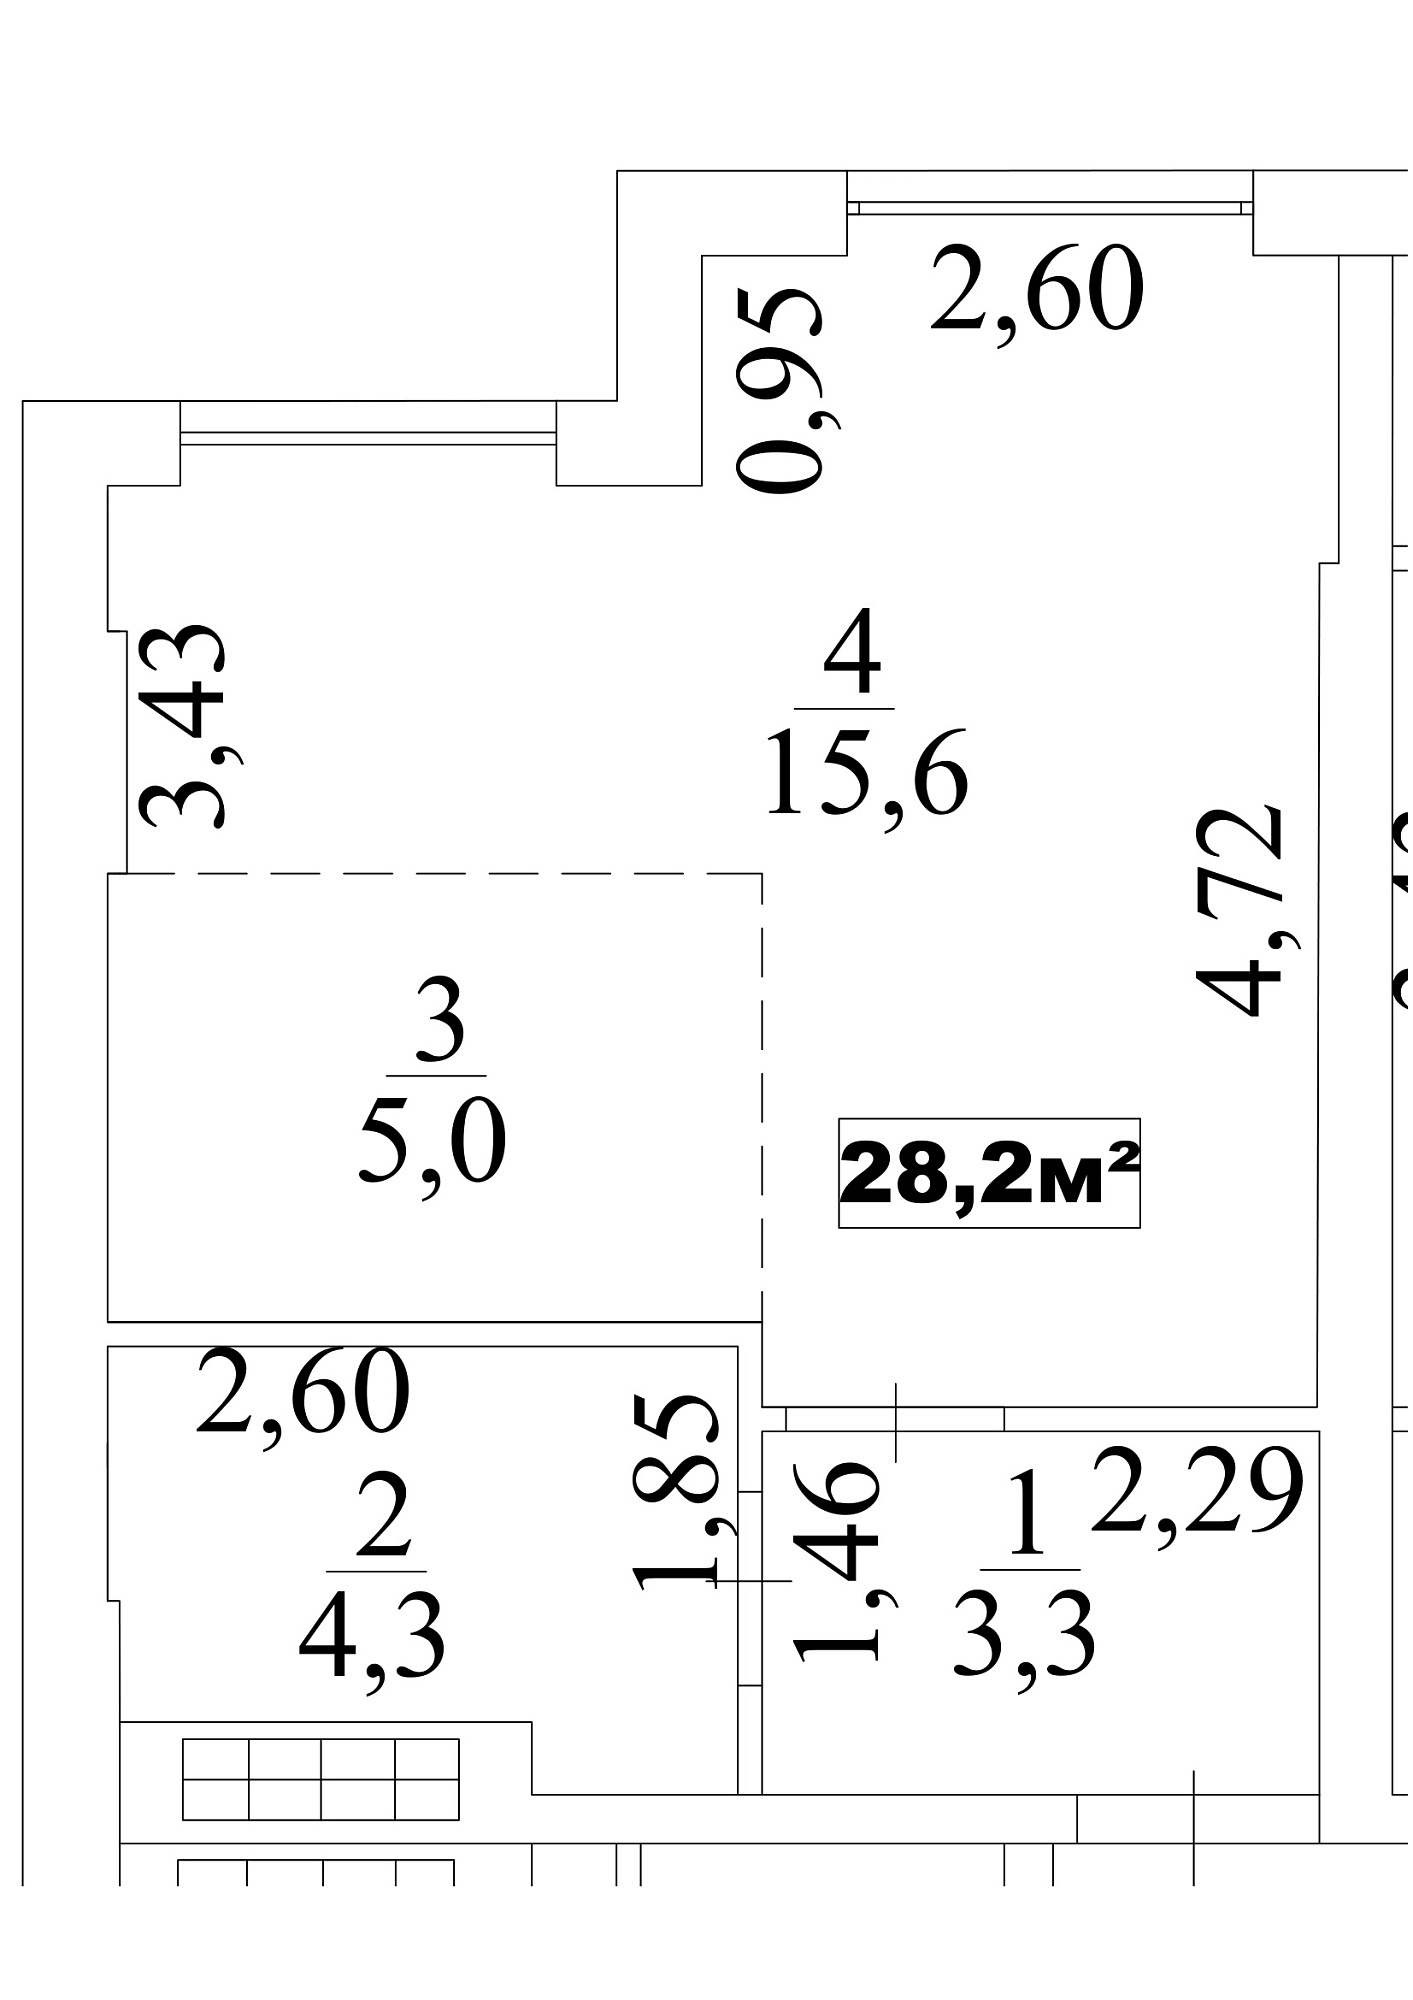 Планування Smart-квартира площею 28.2м2, AB-10-10/0084б.